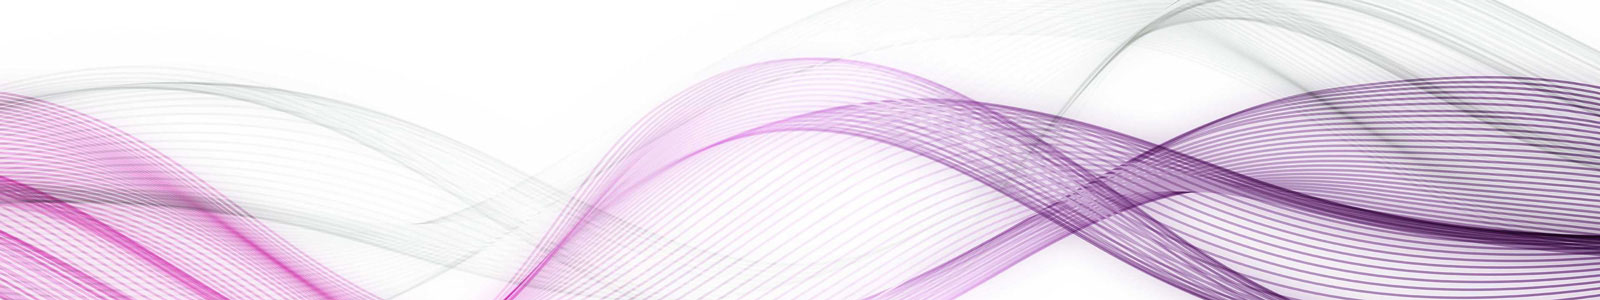 №4476 - Пурпурно-фиолетовые волны